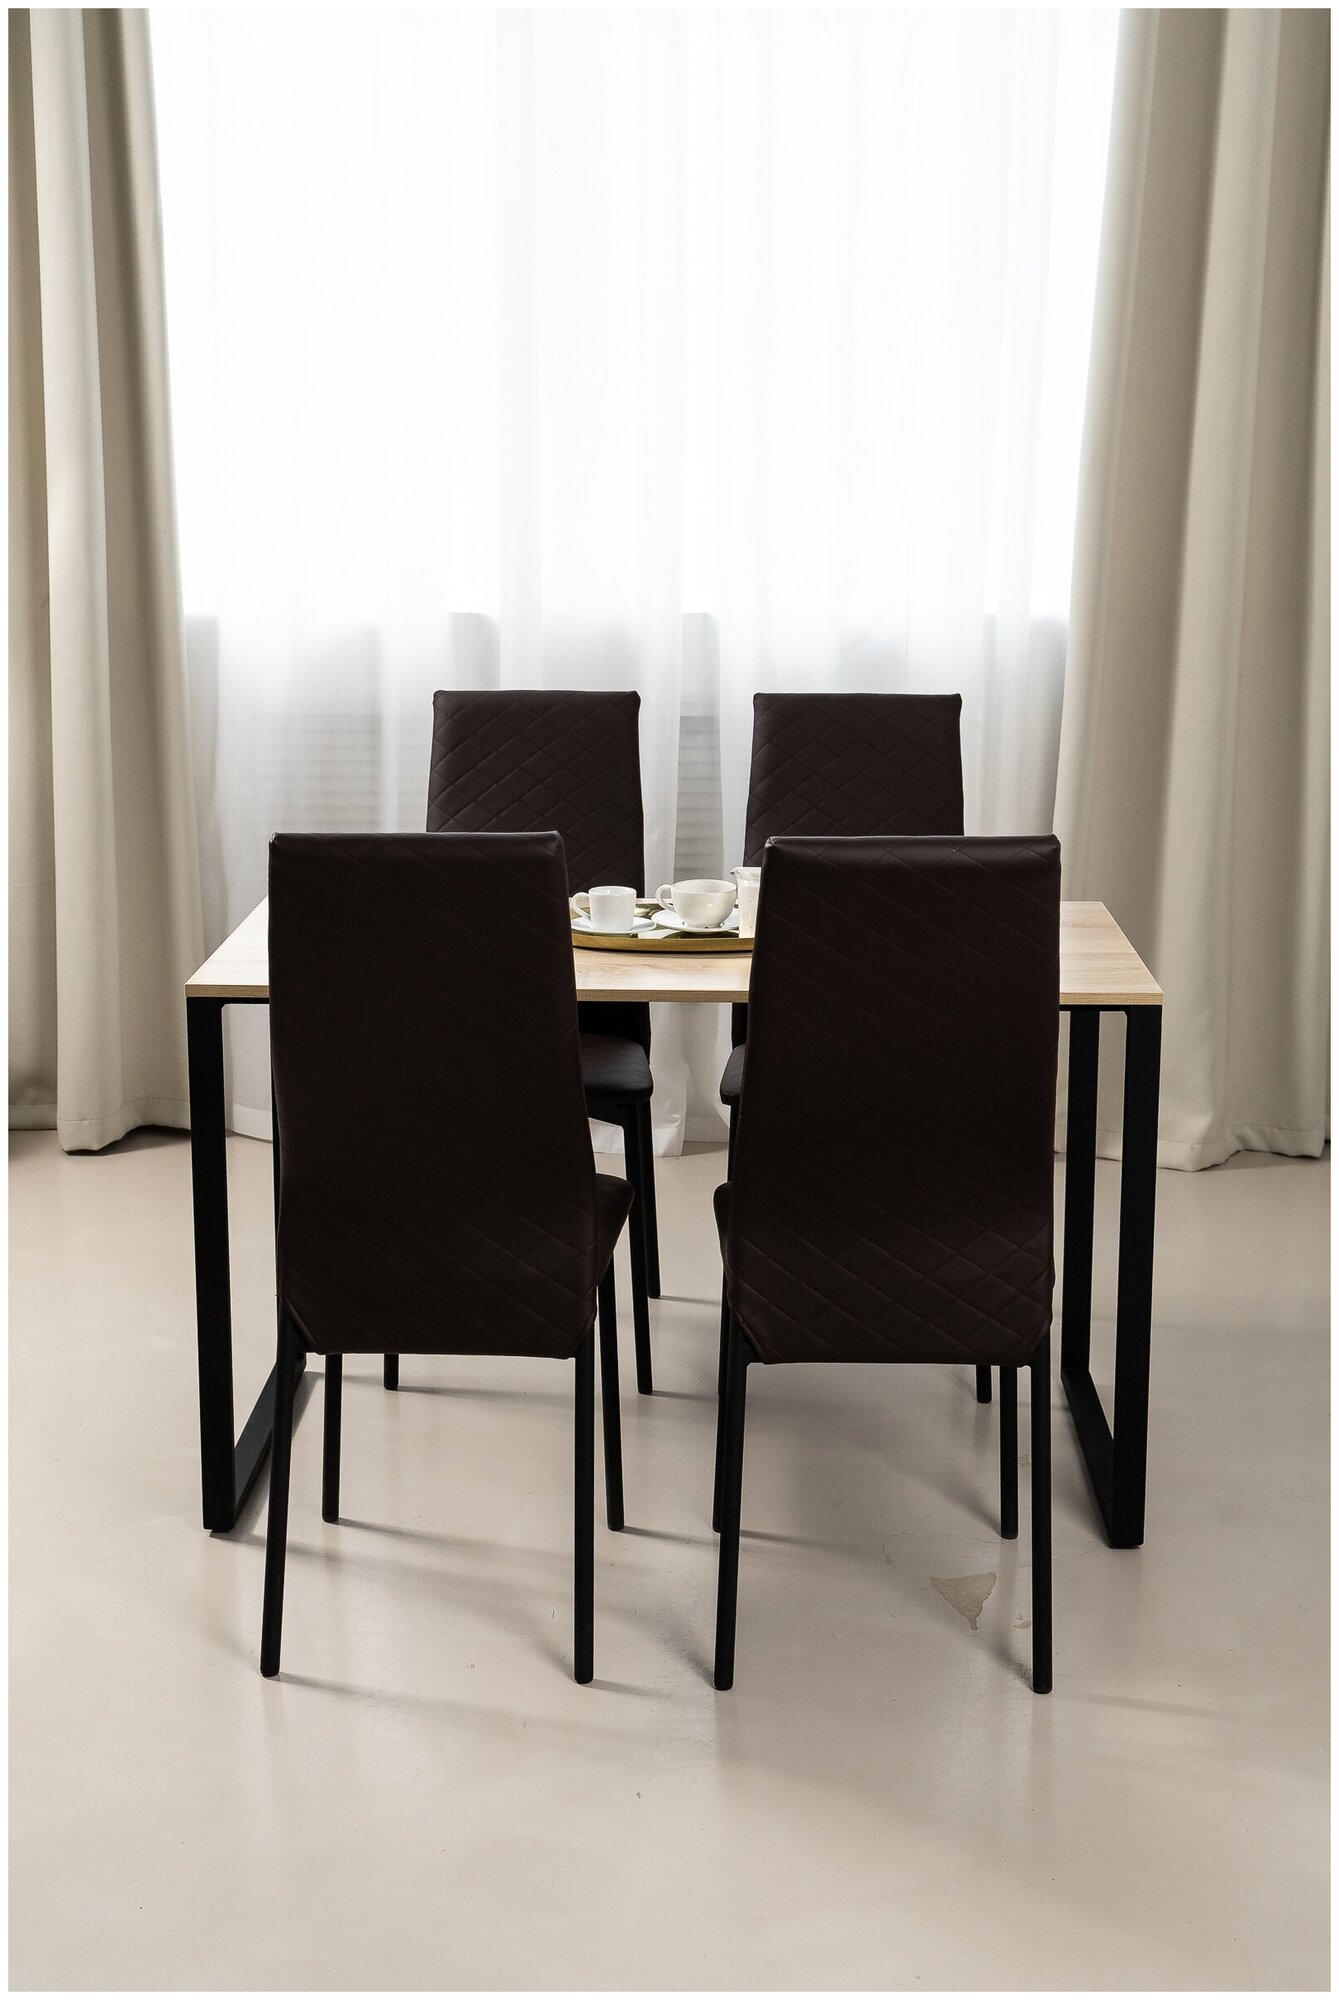 Обеденная группа Стол и 4 стула, стол «Дуб Сонома» 120х60х75, стулья Коричневые Исскуственая кожа 4 шт.